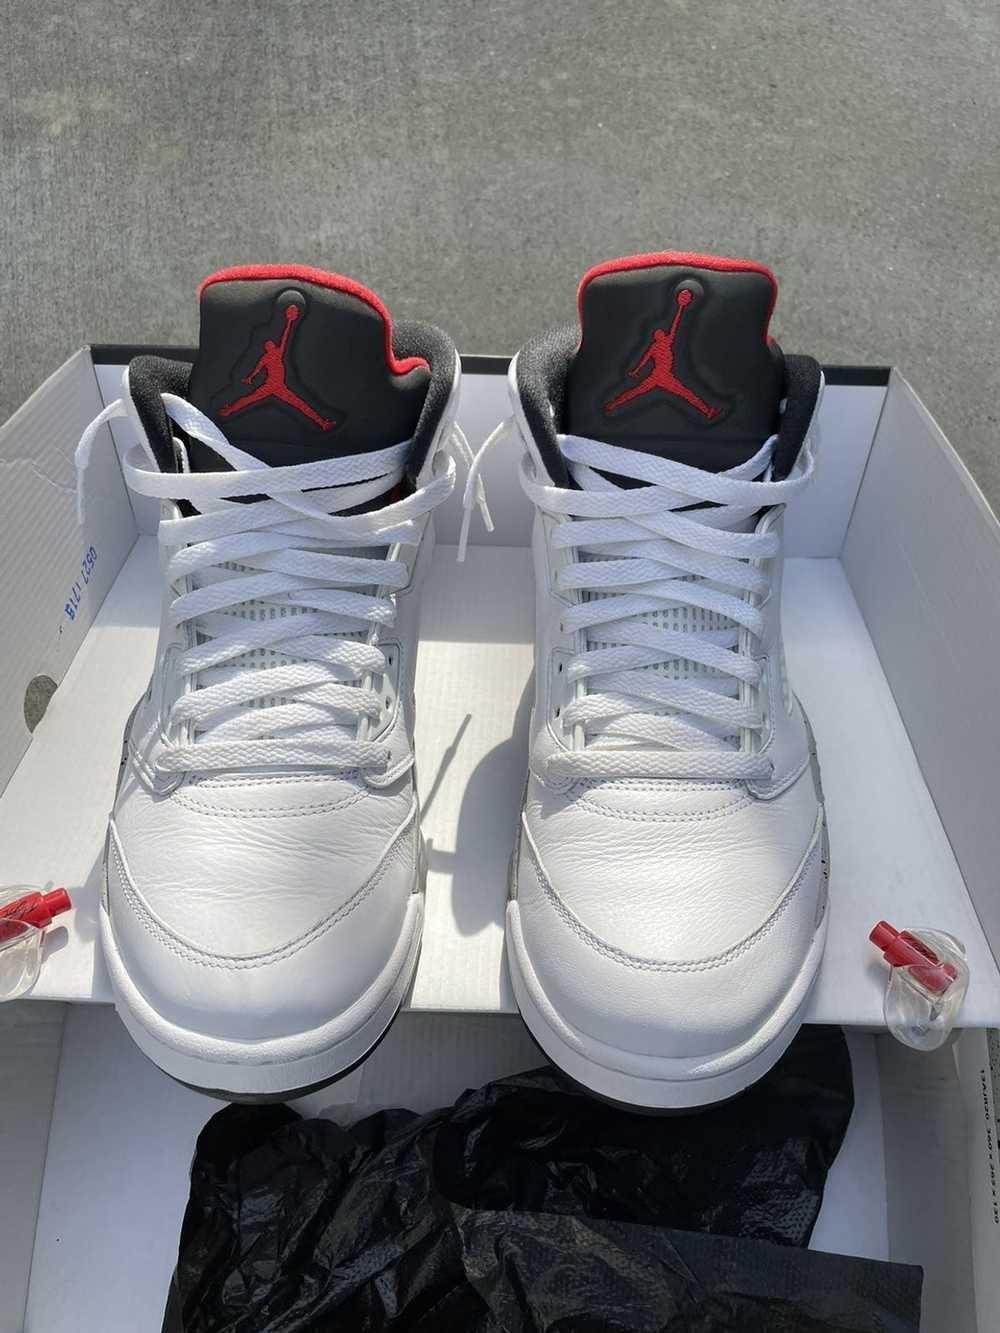 Jordan Brand × Nike Jordan 5 Retro - image 2